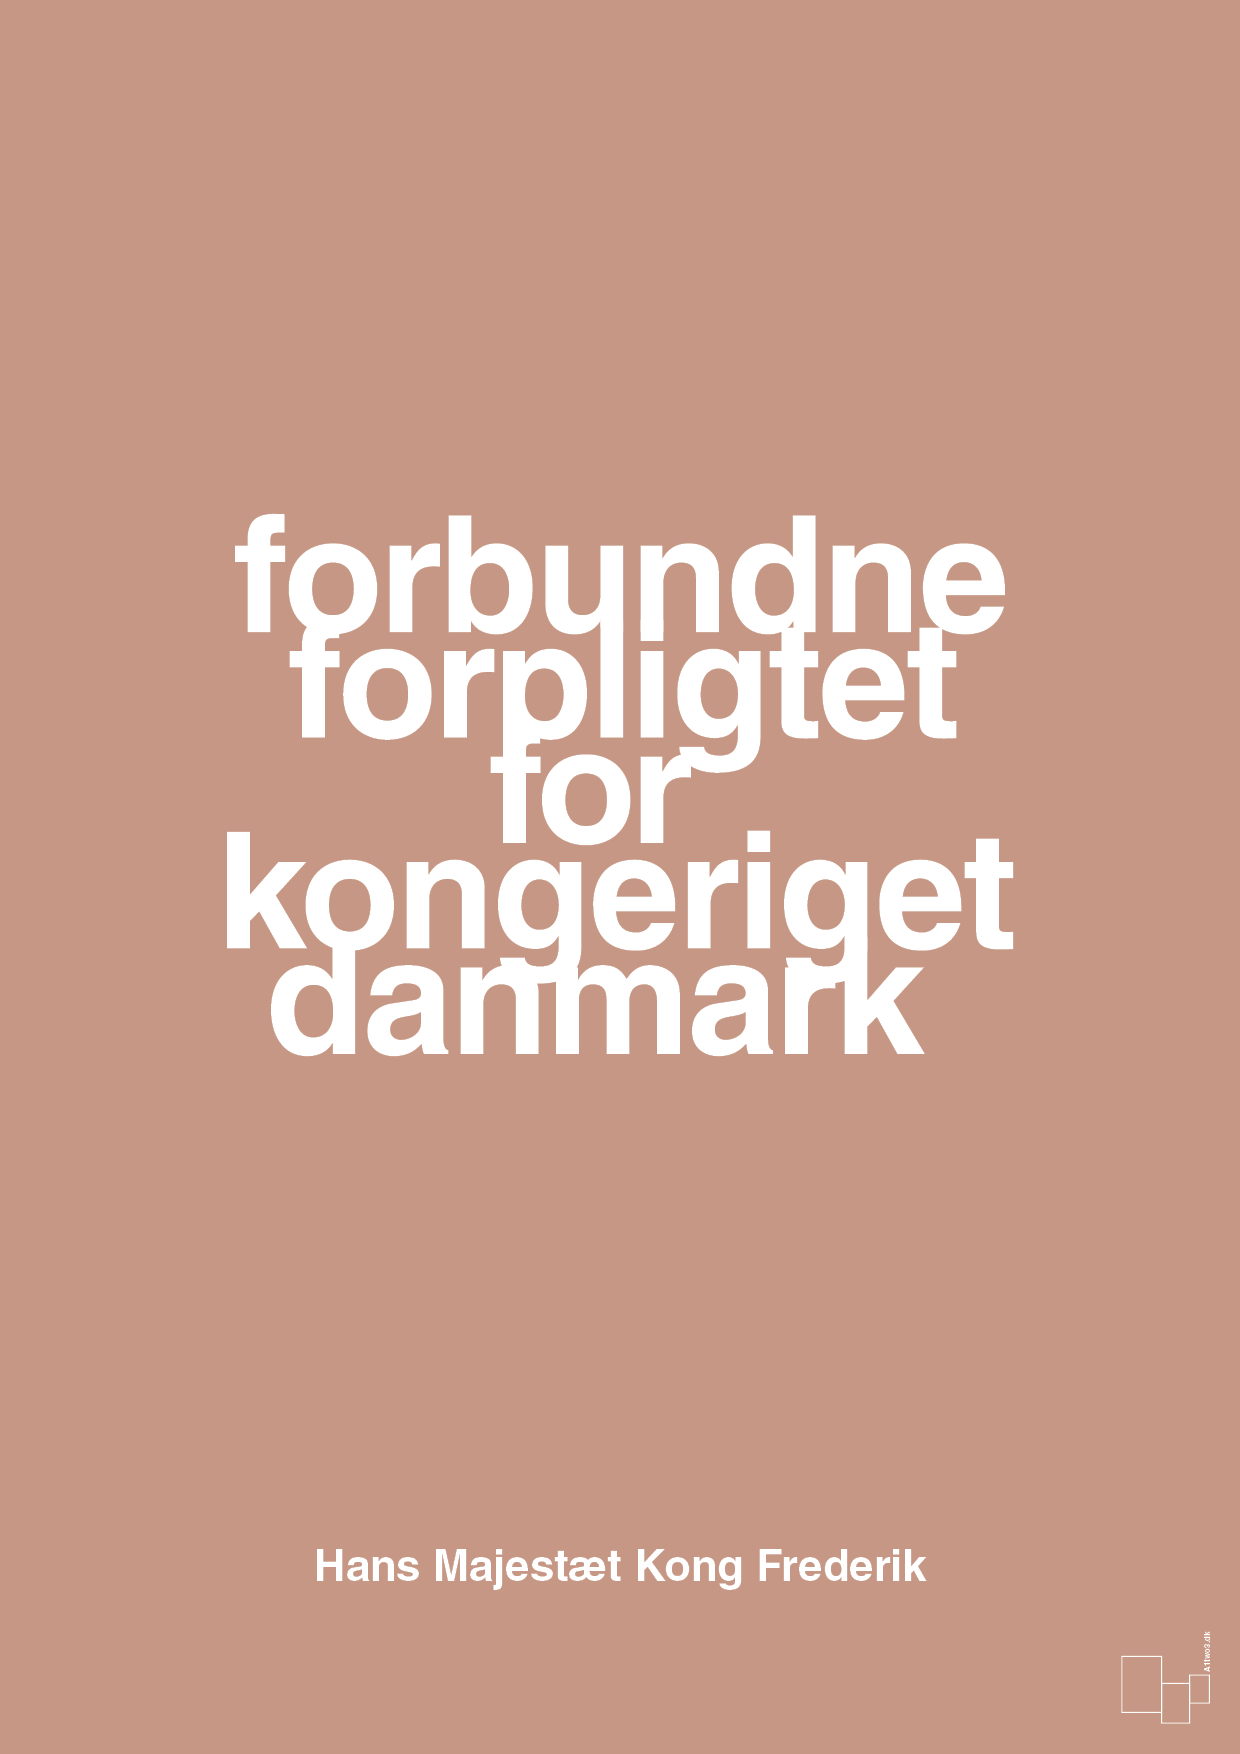 plakat: forbundne forpligtet for kongeriget danmark